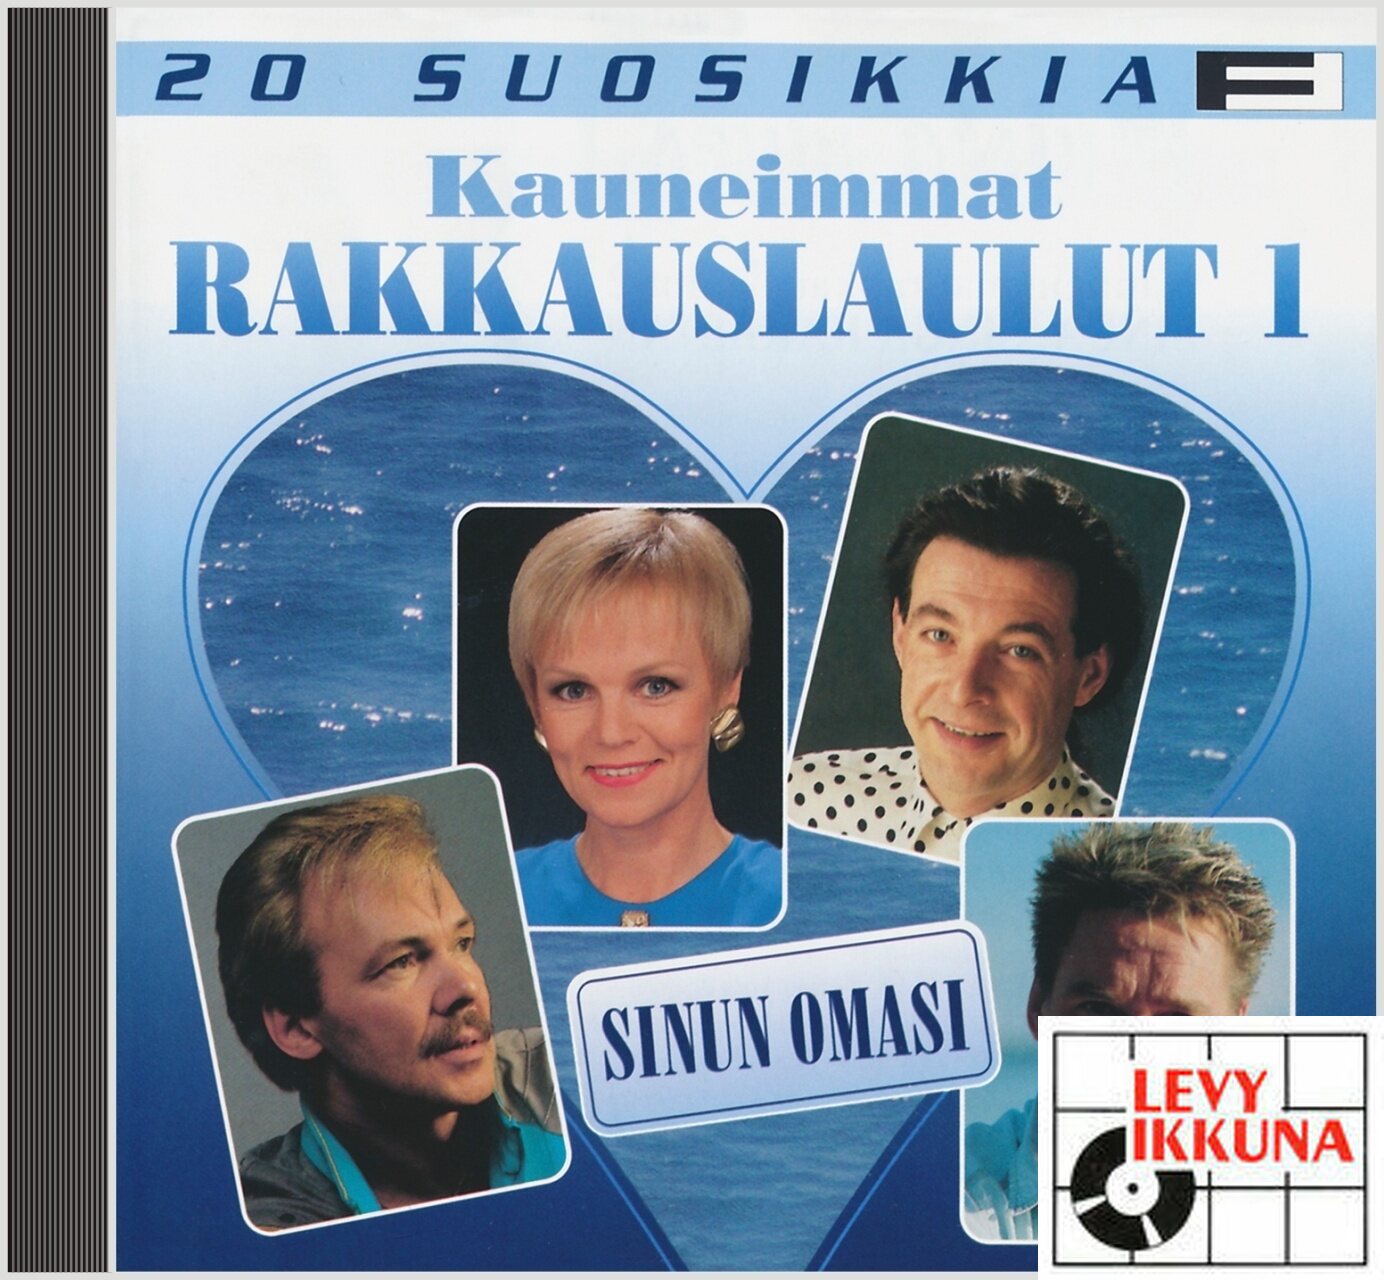 Kauneimmat rakkauslaulut 1 – Sinun omasi - 20 Suosikkia CD | SUOMI ISKELMÄ  | Levyikkuna